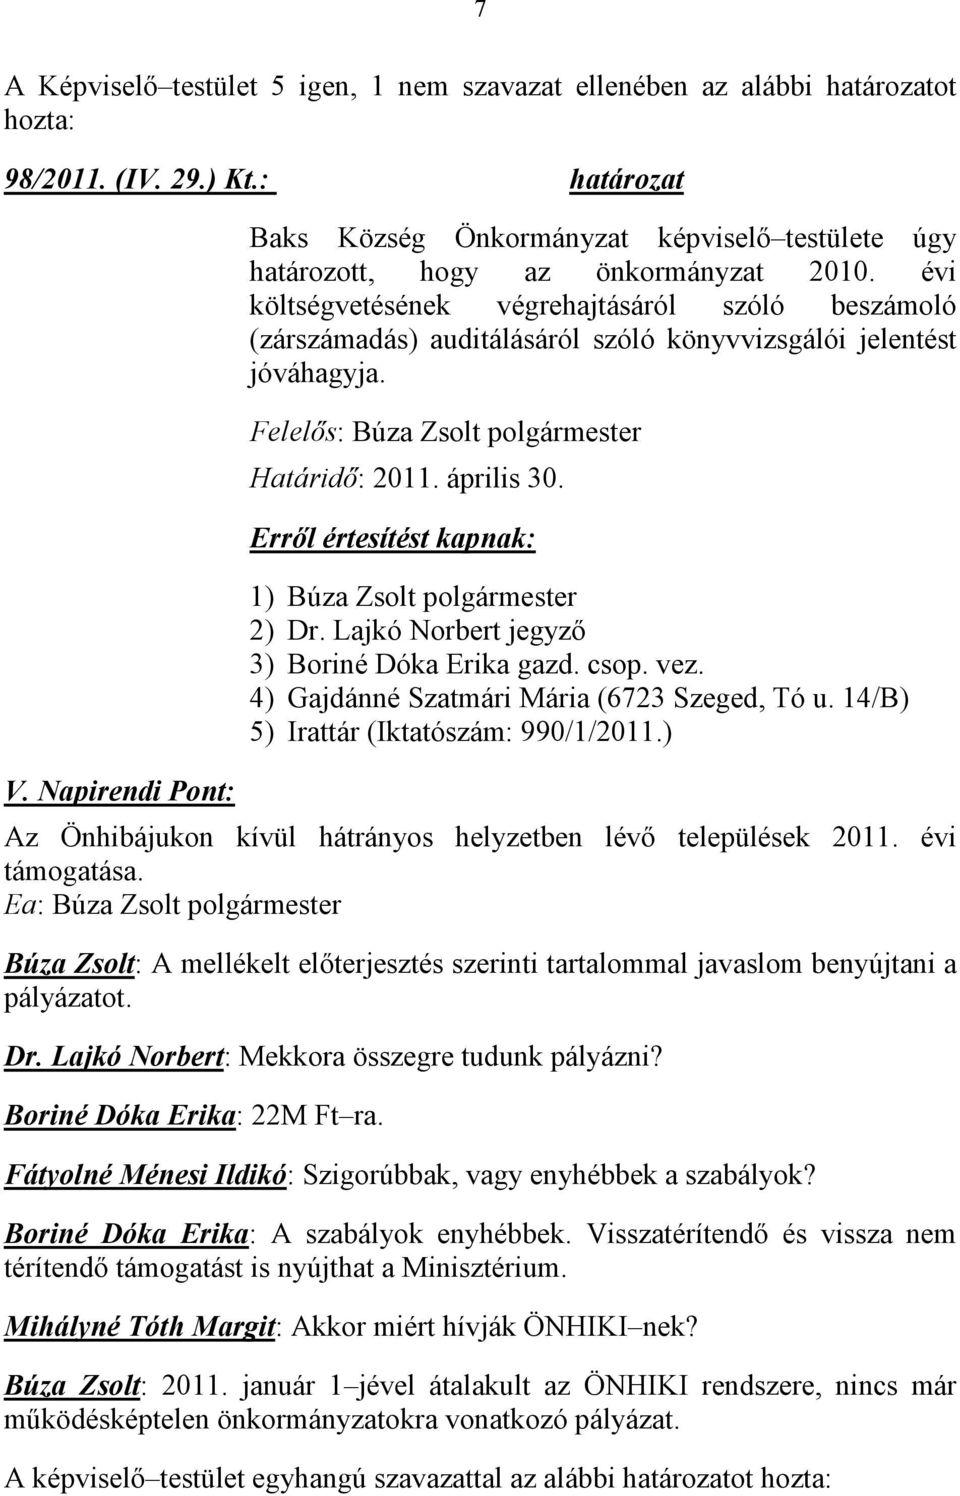 évi költségvetésének végrehajtásáról szóló beszámoló (zárszámadás) auditálásáról szóló könyvvizsgálói jelentést jóváhagyja. Felelős: Búza Zsolt polgármester Határidő: 2011. április 30.